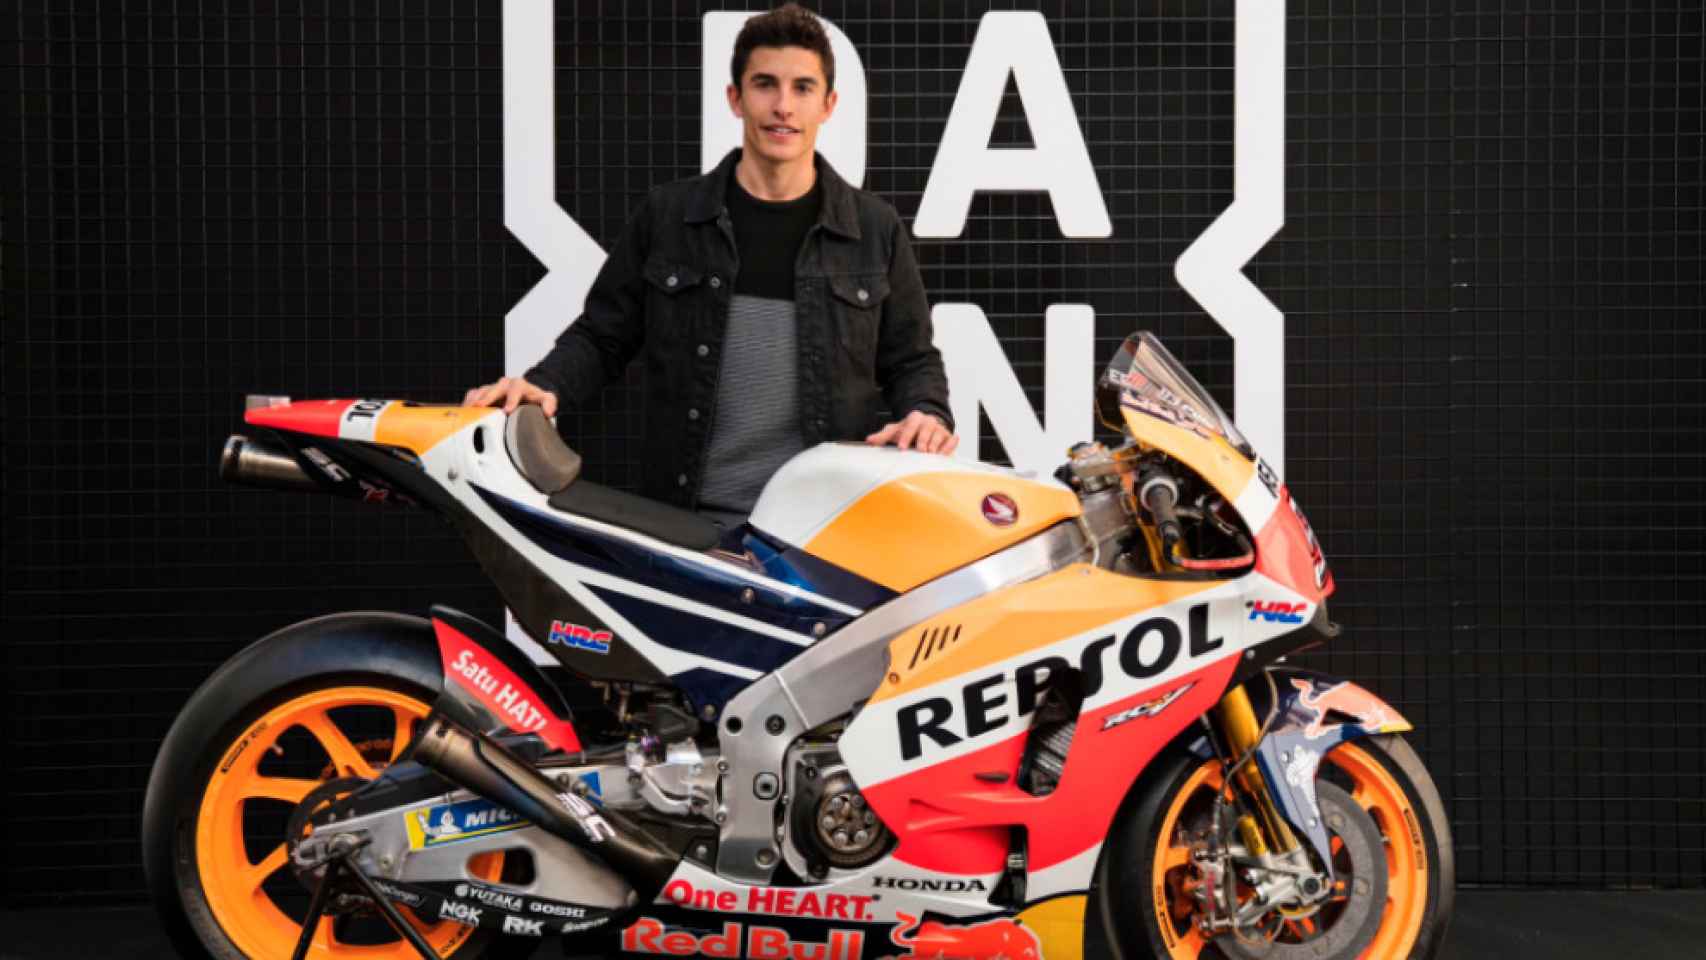 Marc Márquez posando junto a su moto y el logo de Dazn, en una imagen de archivo.